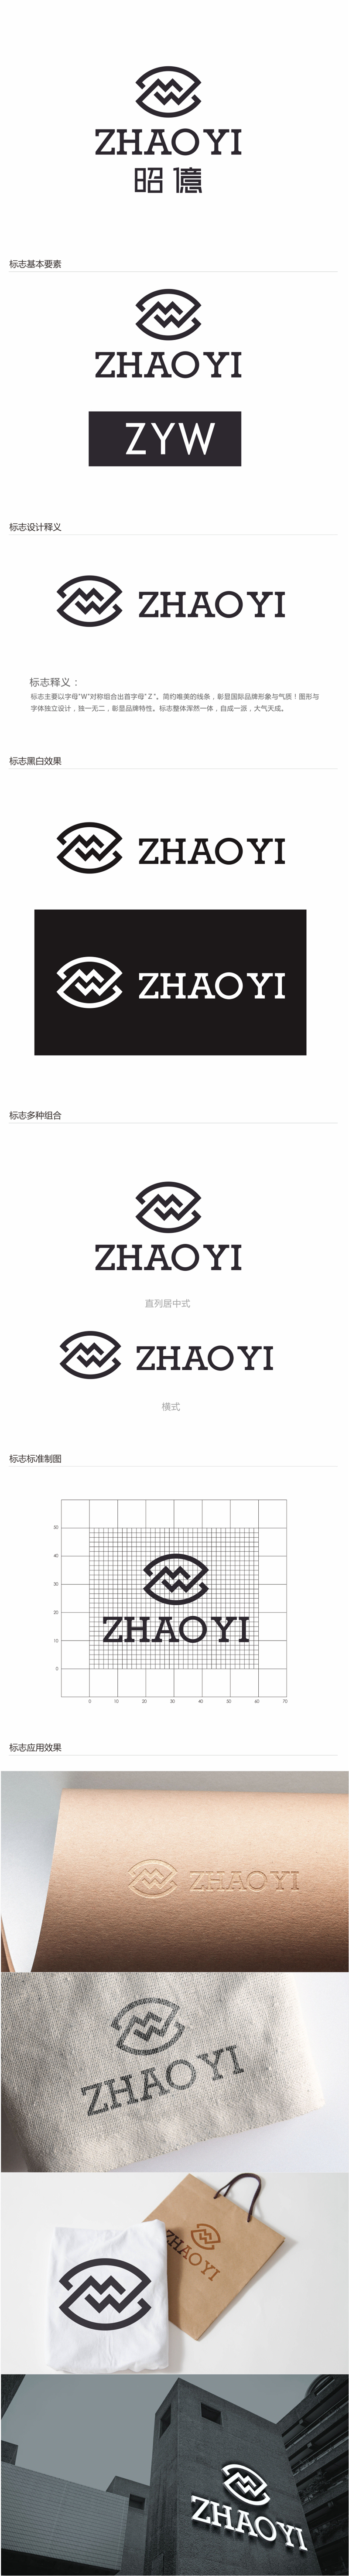 唐国强的昭億鞋业logo设计